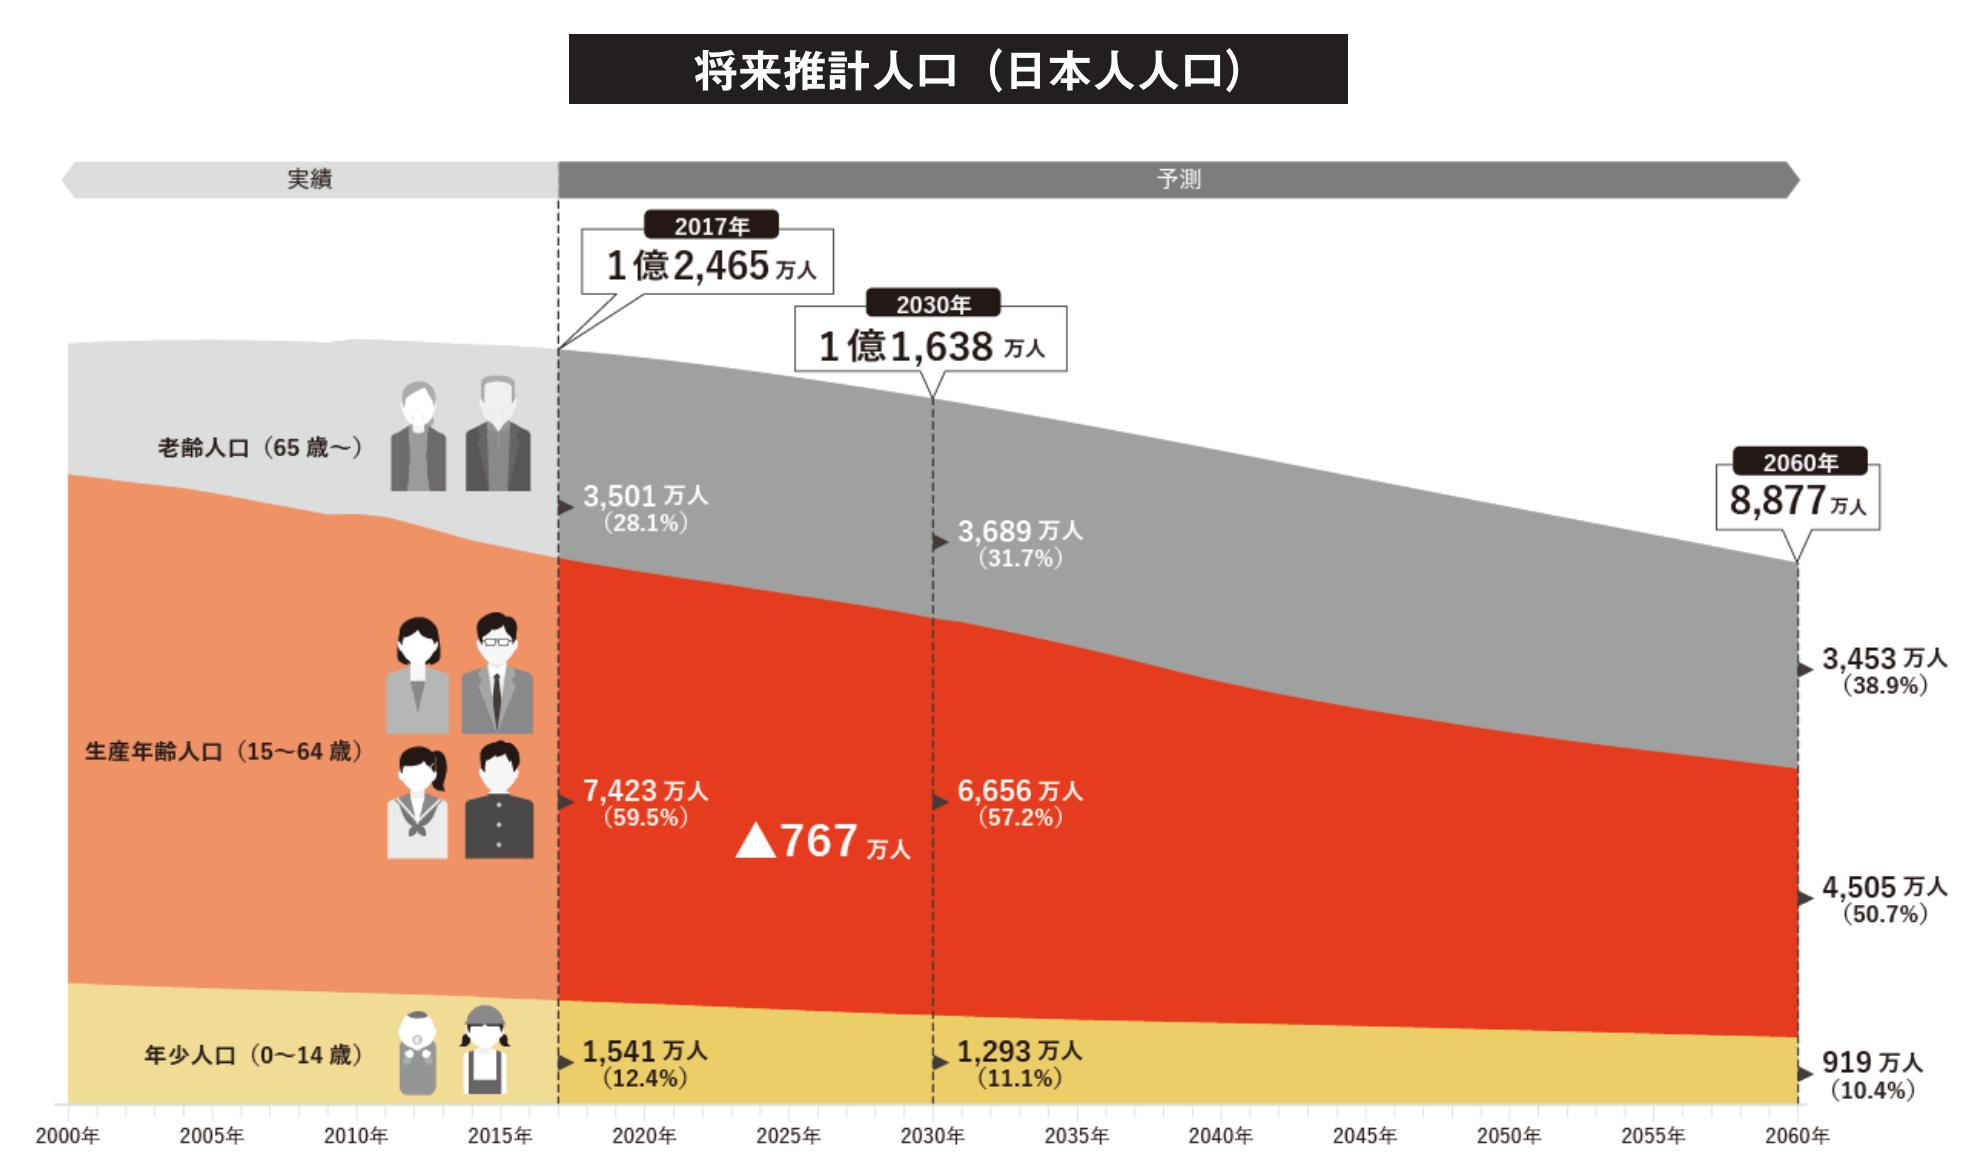 将来推計人口(日本人人口)